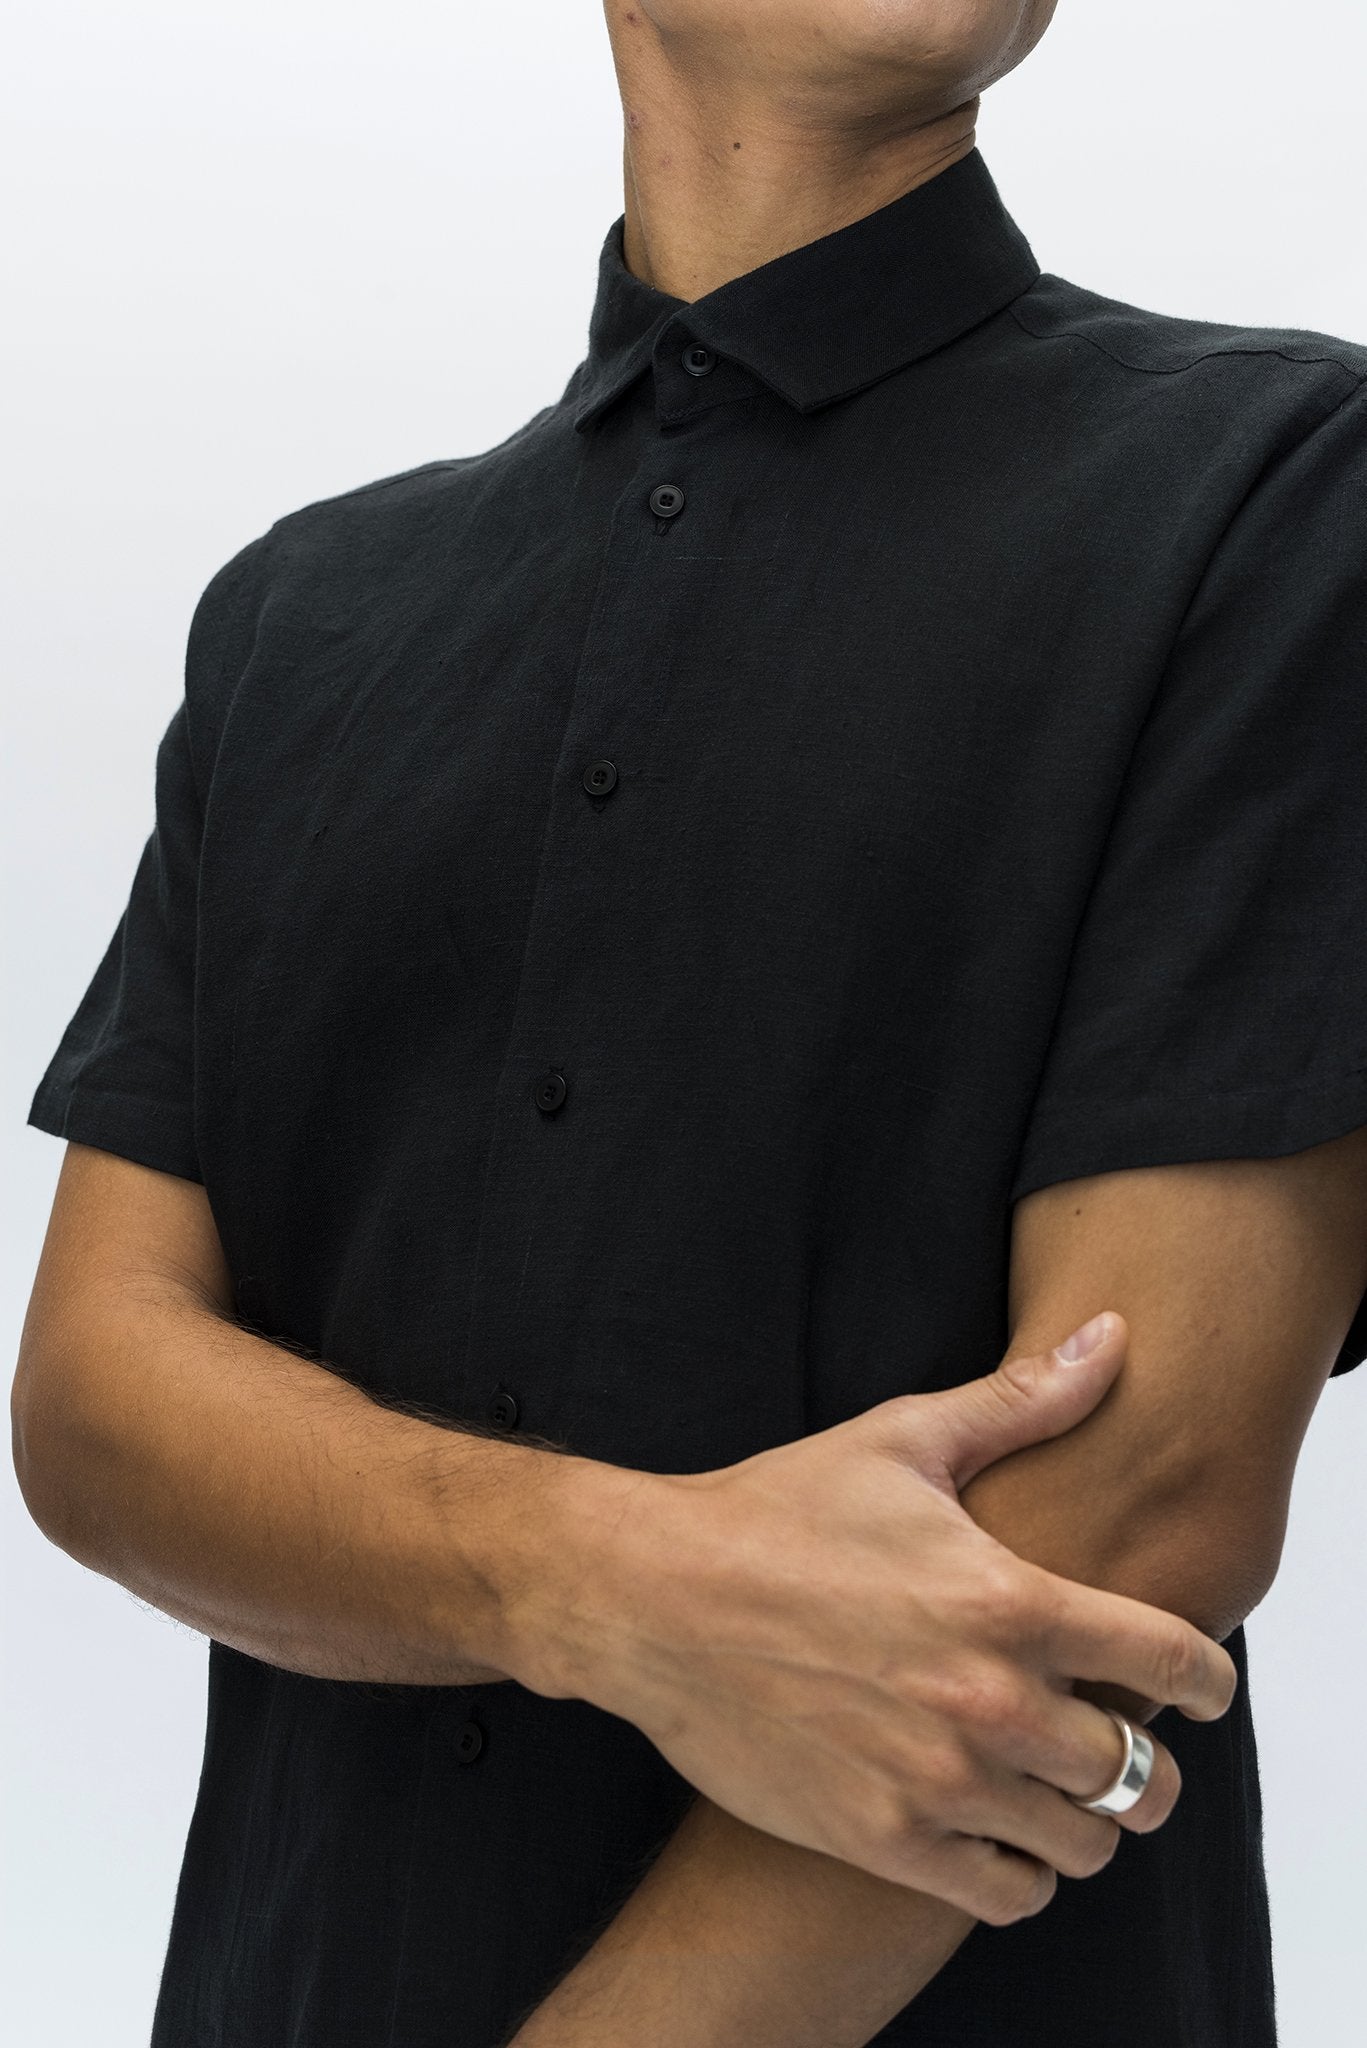 A.BCH A.04 Black Short Sleeve Button Up Shirt in Organic Linen